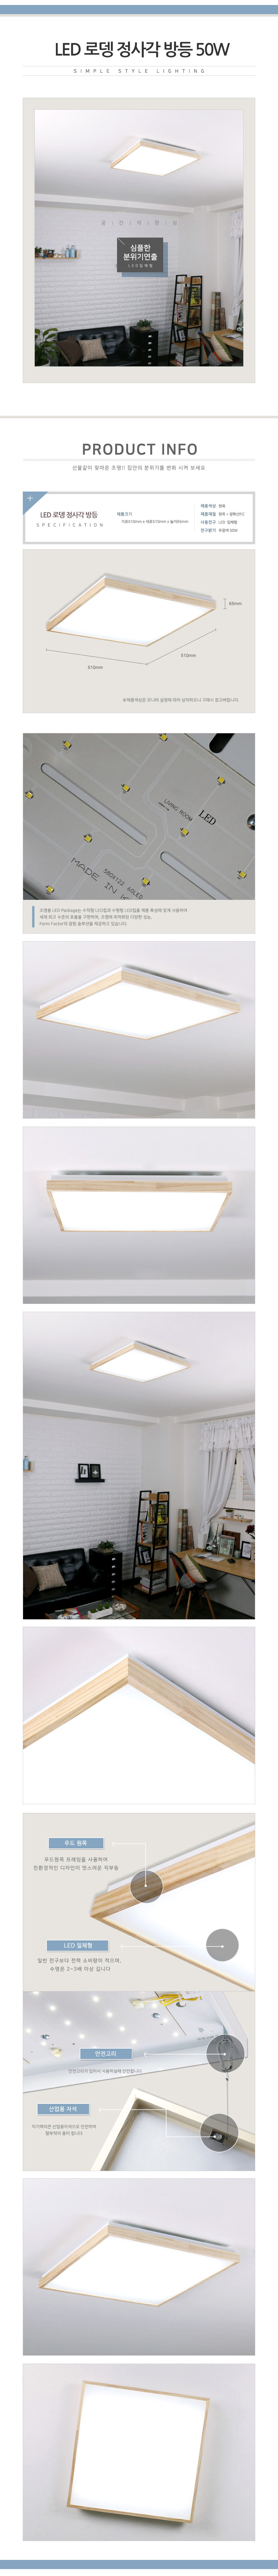 [LED 50W] 로뎅 정사각 방등(주광색)-LG이노텍 LED